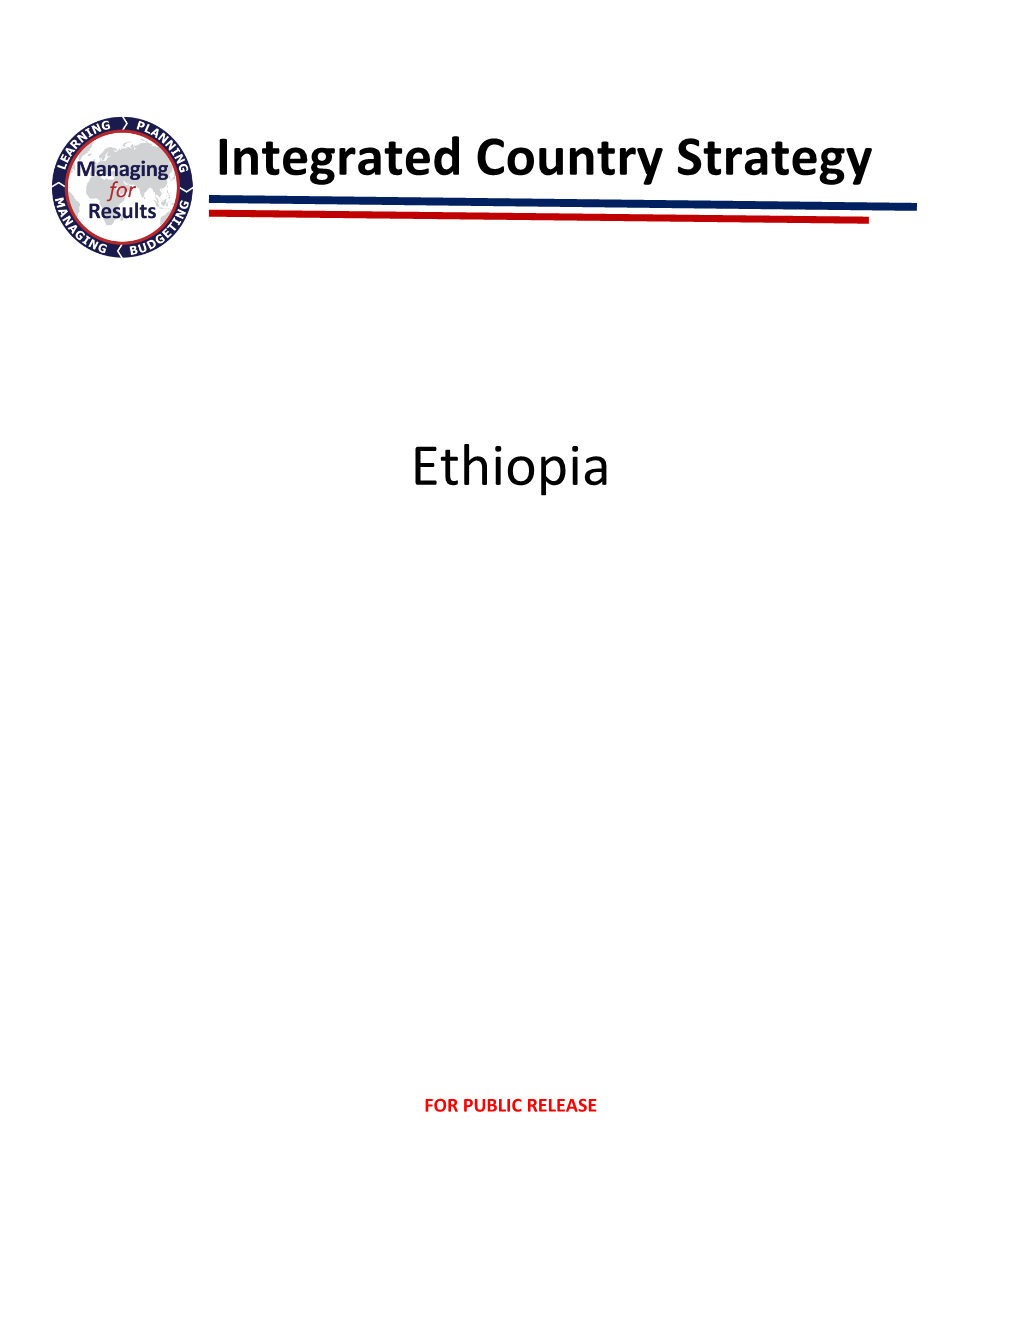 ICS Ethiopia